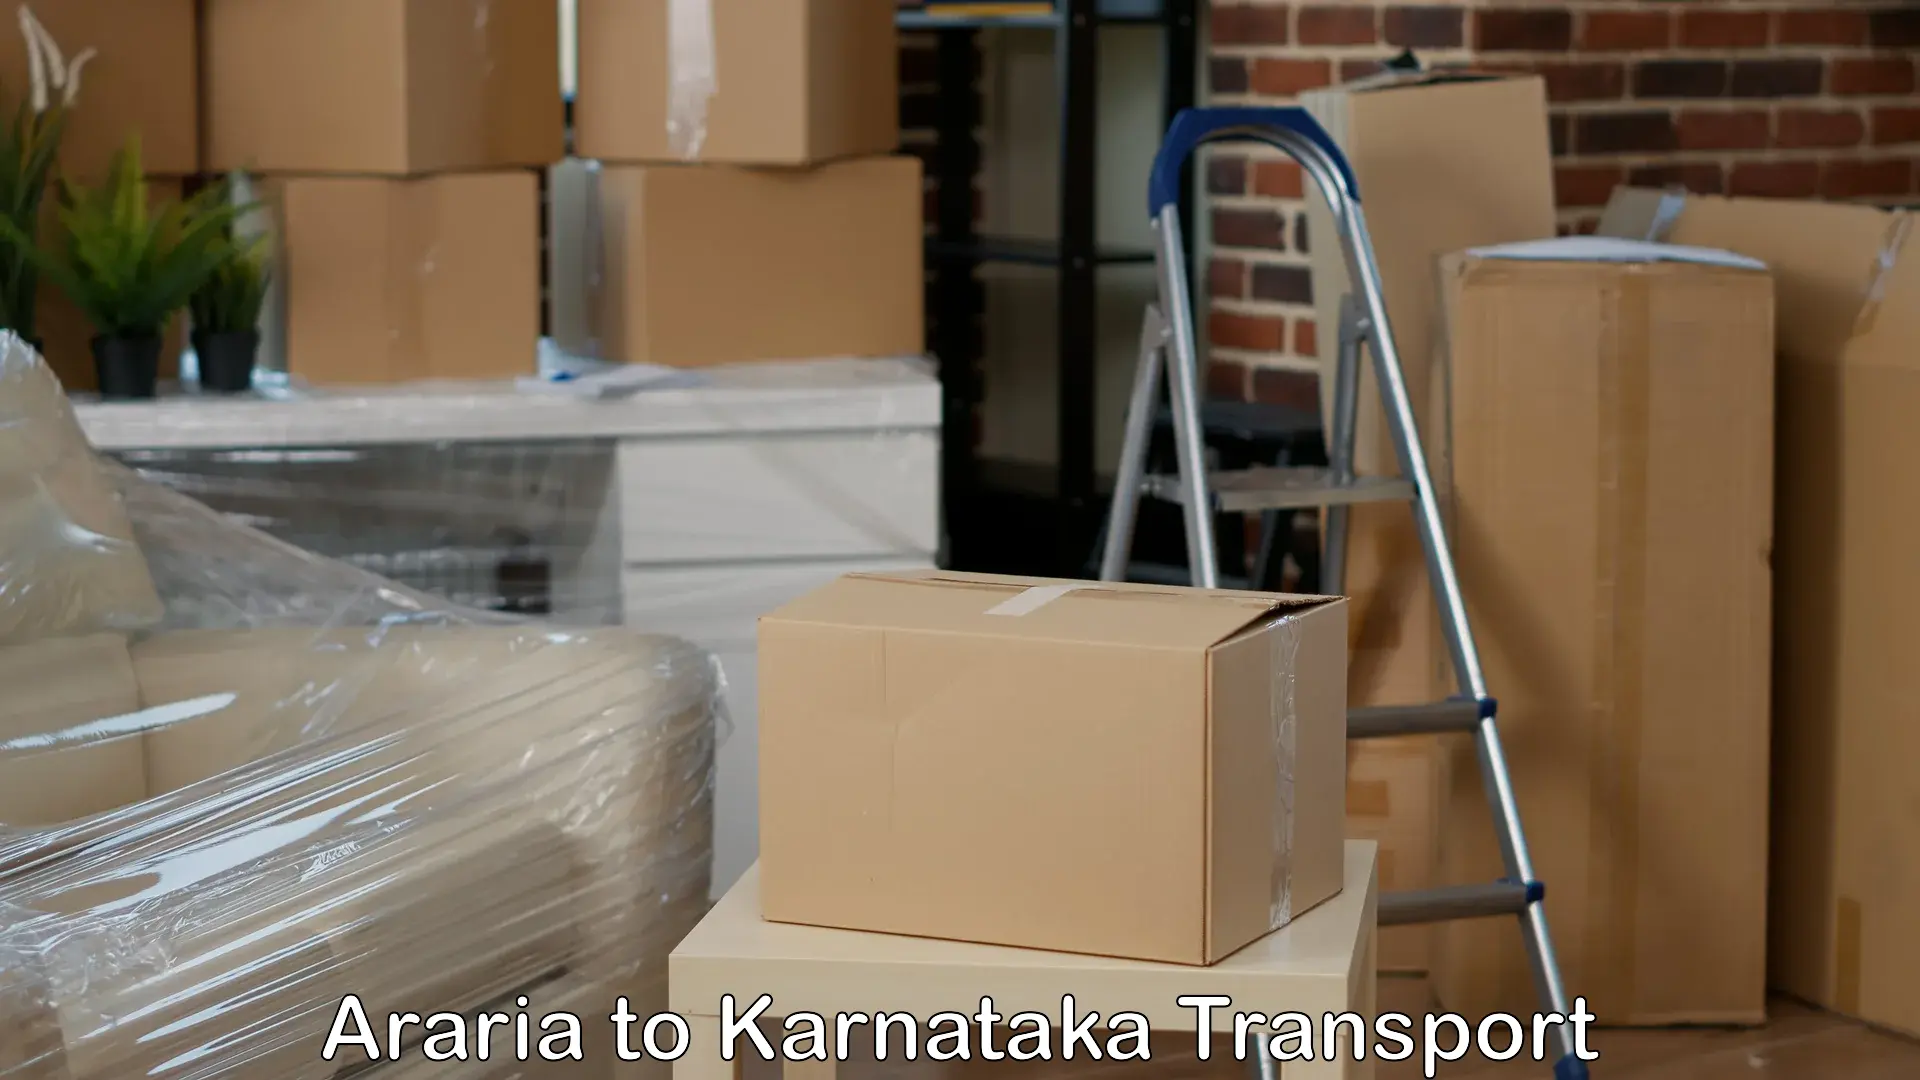 Express transport services Araria to Kanjarakatte